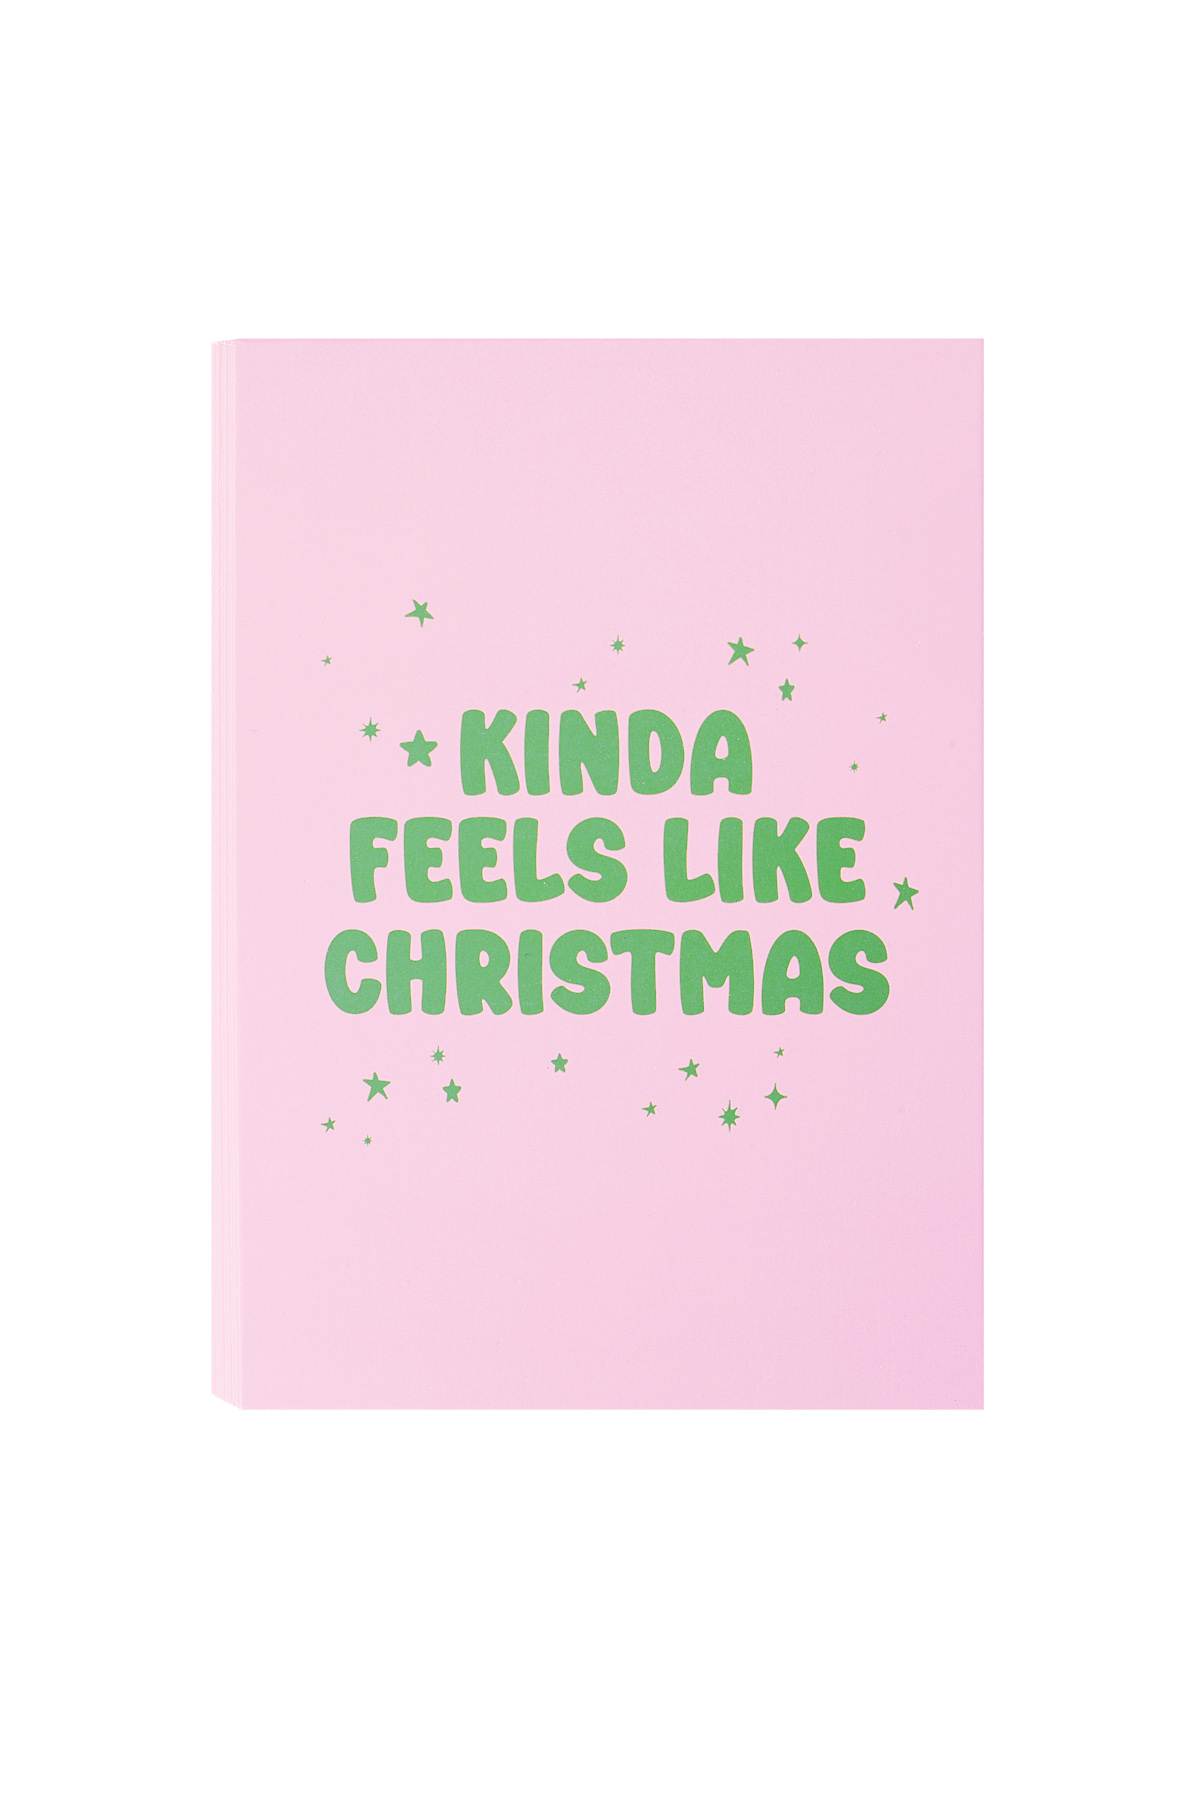 Christmas greeting card kinda feels like christmas - pink